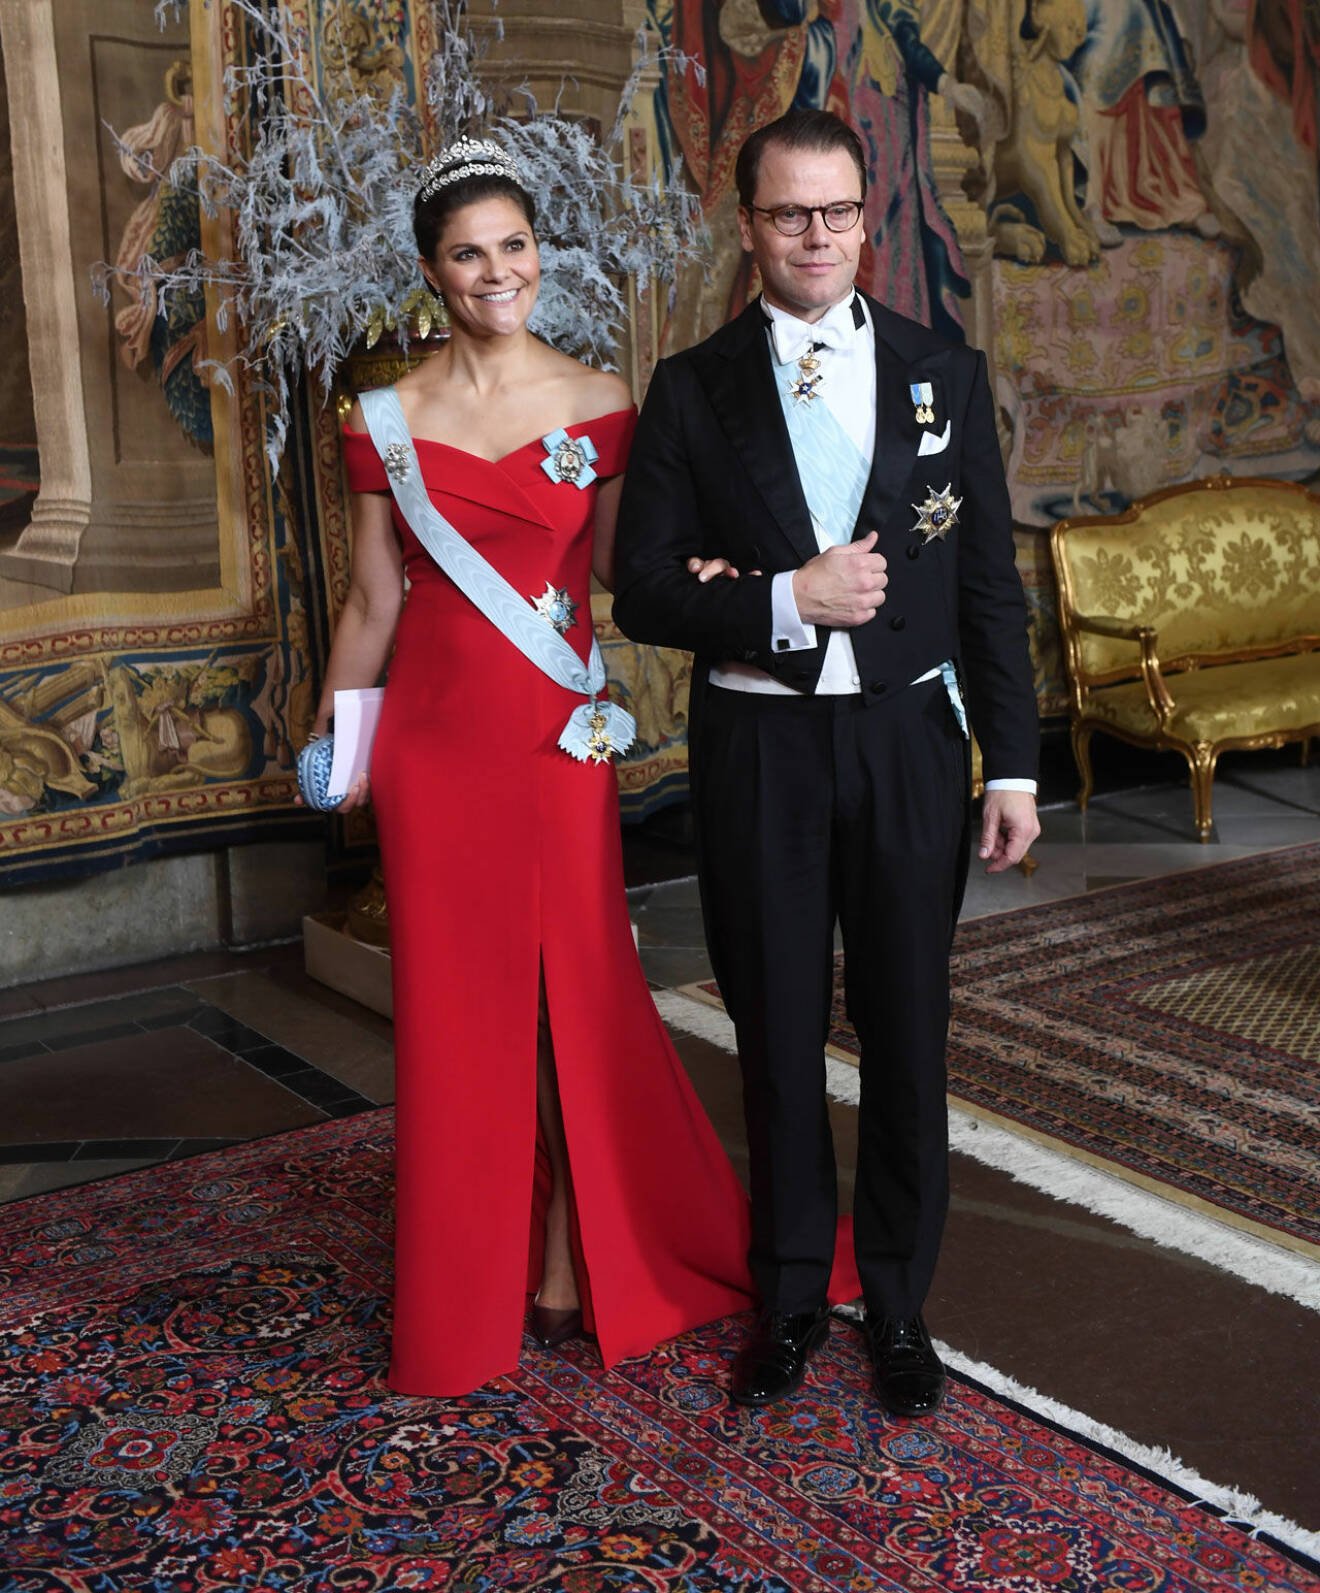 Kronprinsessan Victoria i röd klänning under kungamiddag 2018